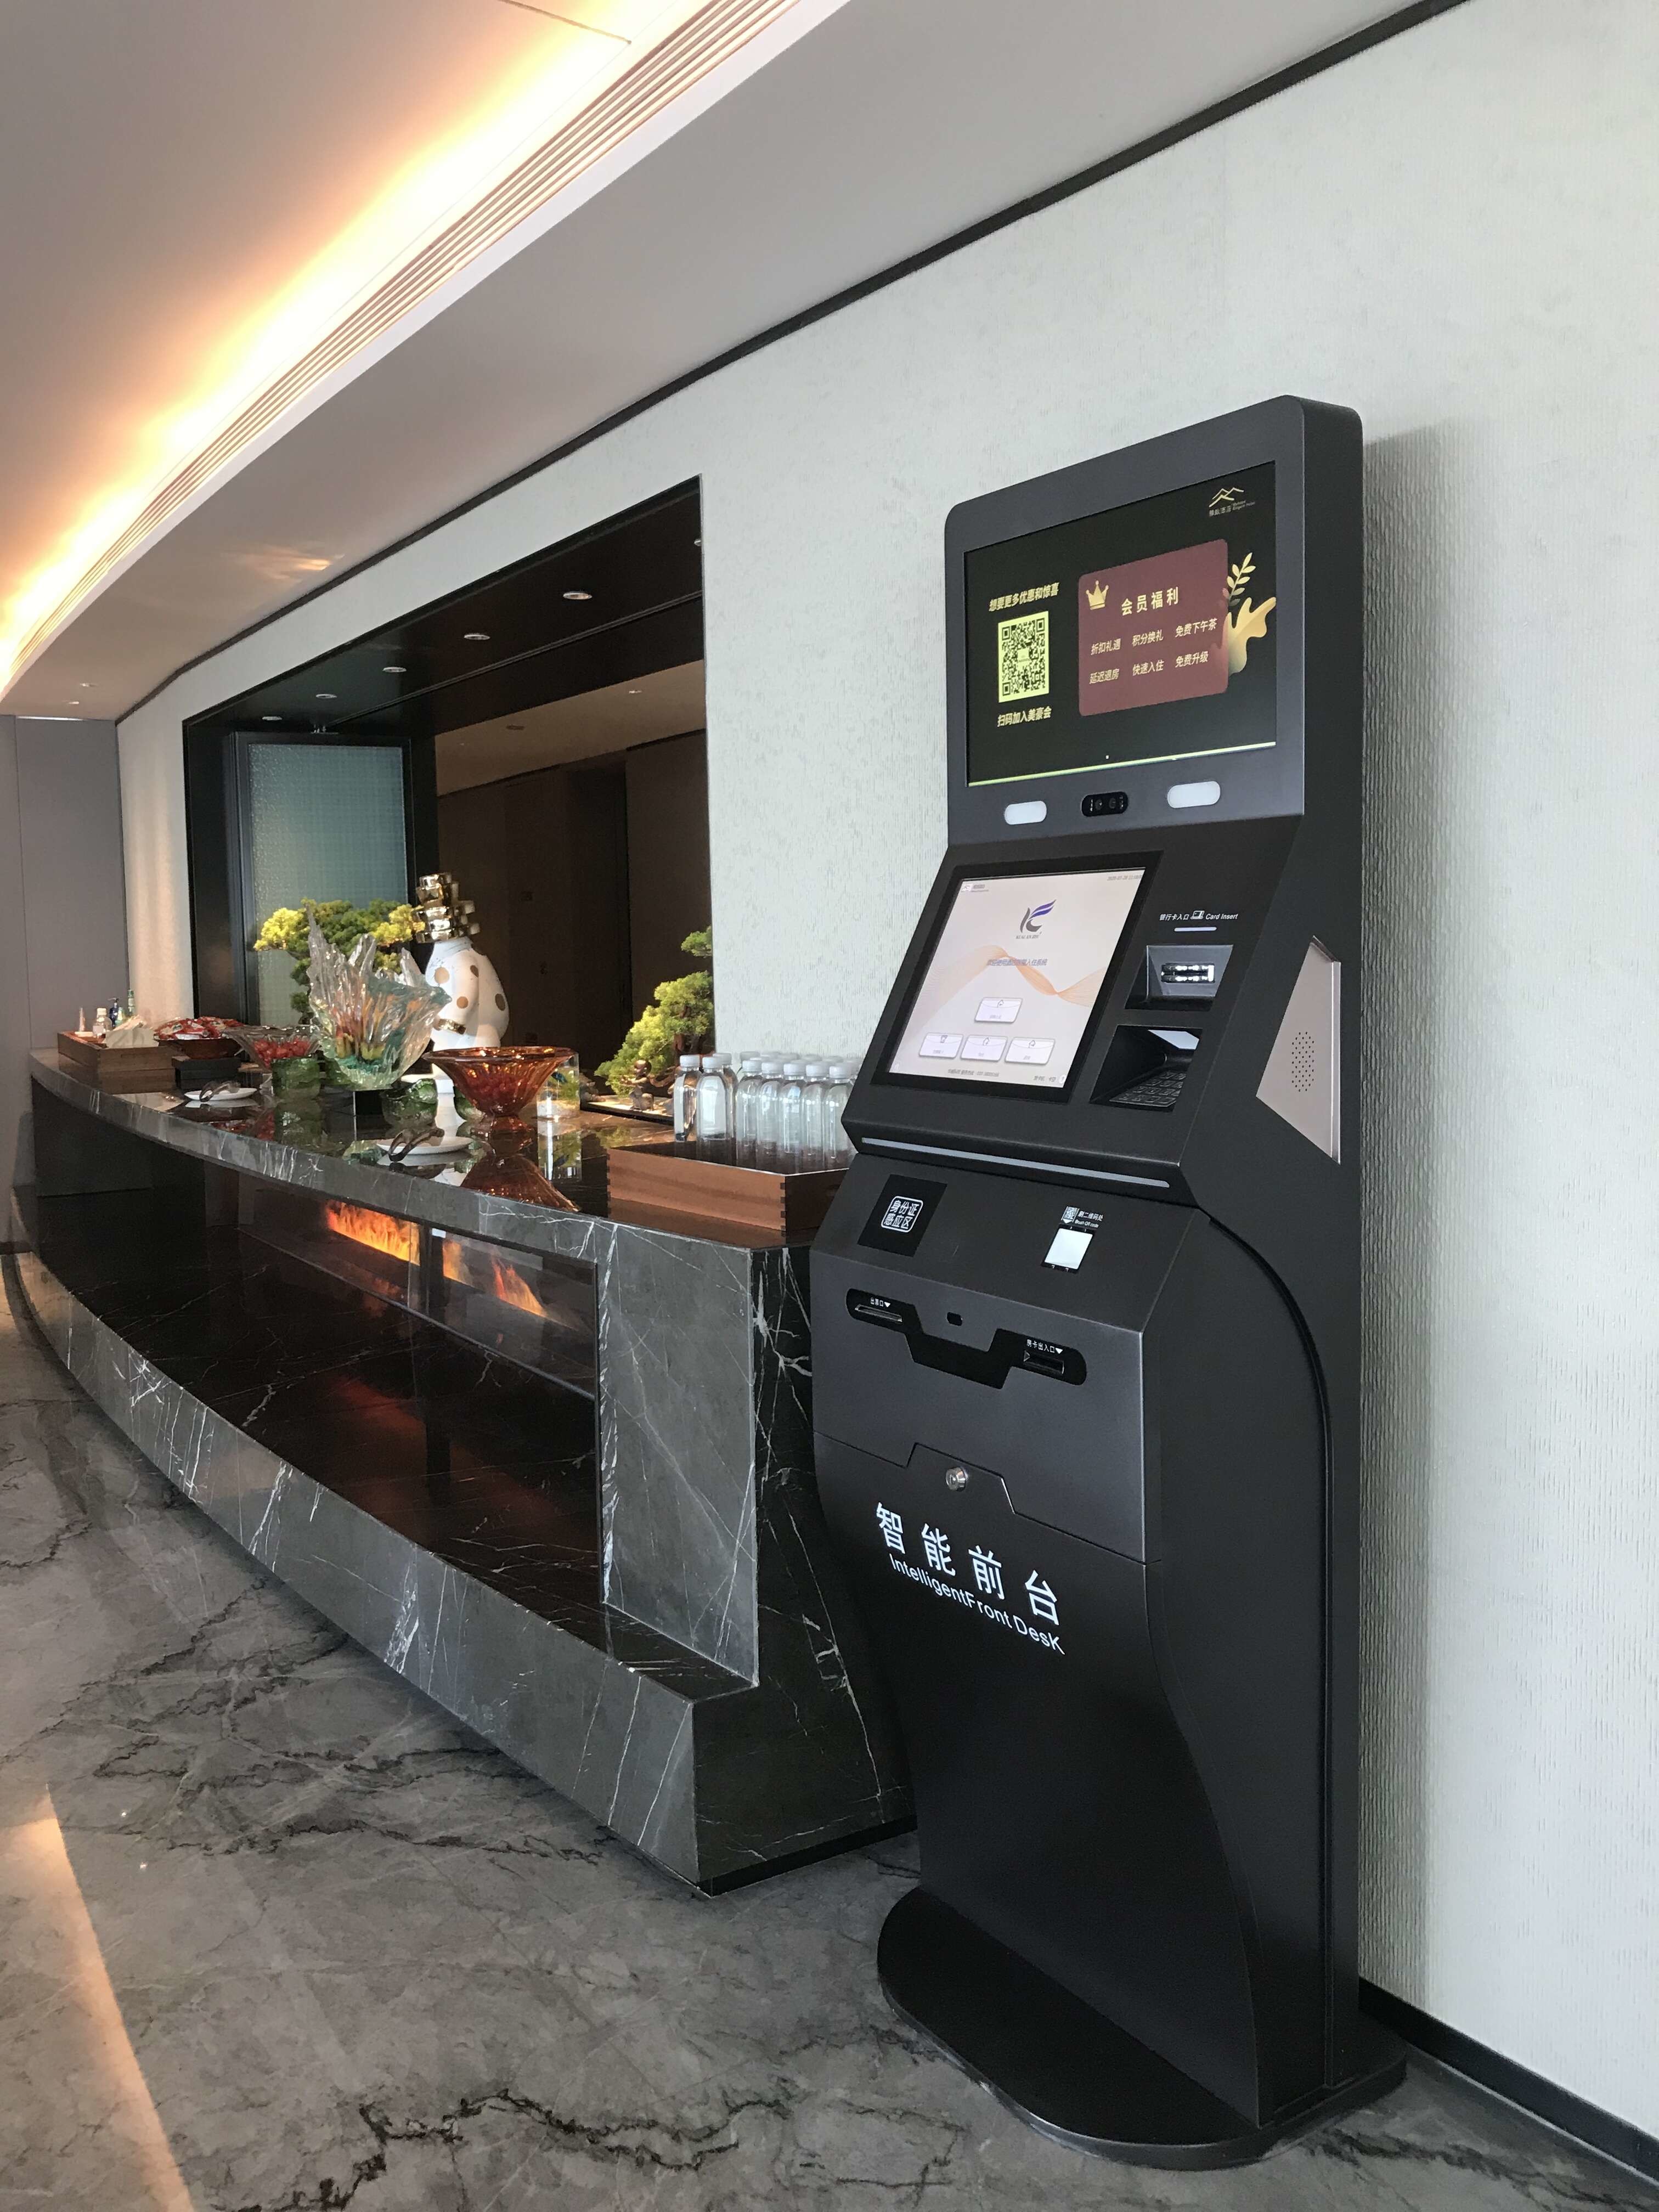 Dernière affaire concernant Kiosque d'enregistrement de KER Hotel arrangé dans l'hôtel élégant de Guangzhou (tour de canton de ville nouvelle de Zhujiang)